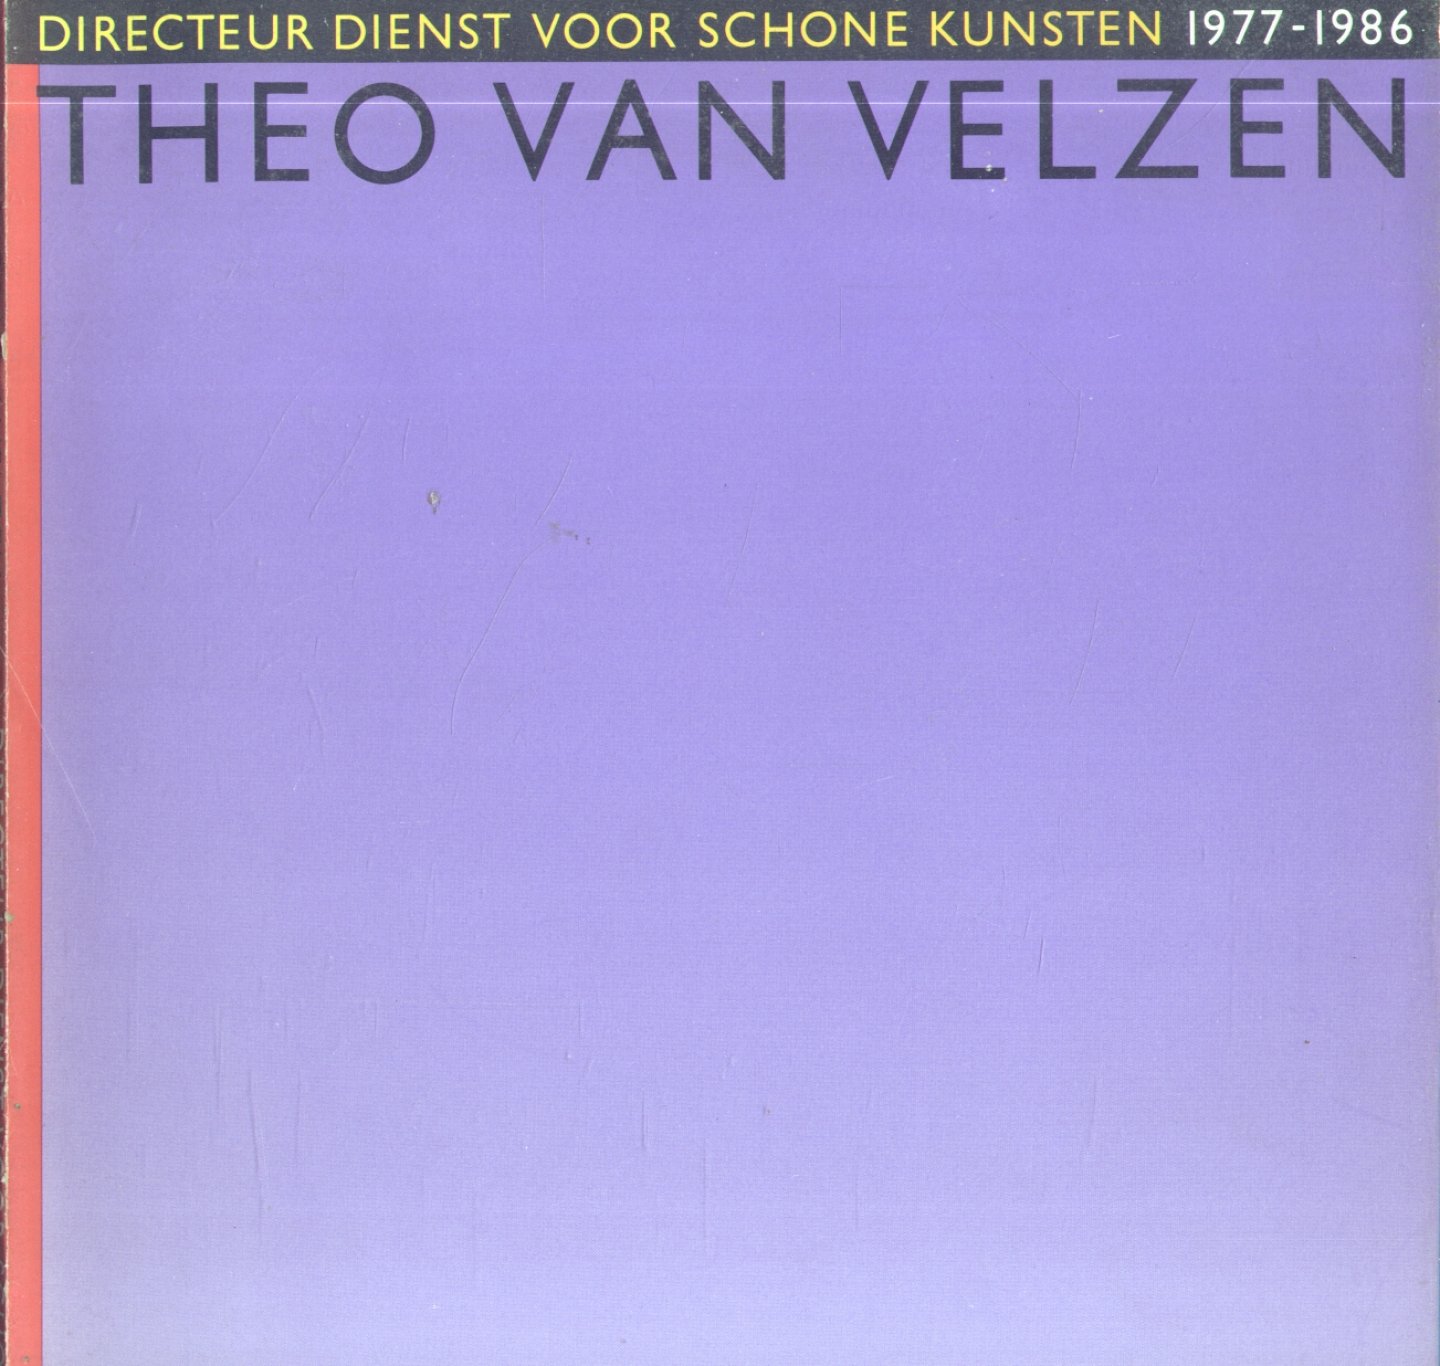 Auteurs (diverse) - Theo van Velzen - Directeur Dienst voor Schone Kunsten 1977-1986